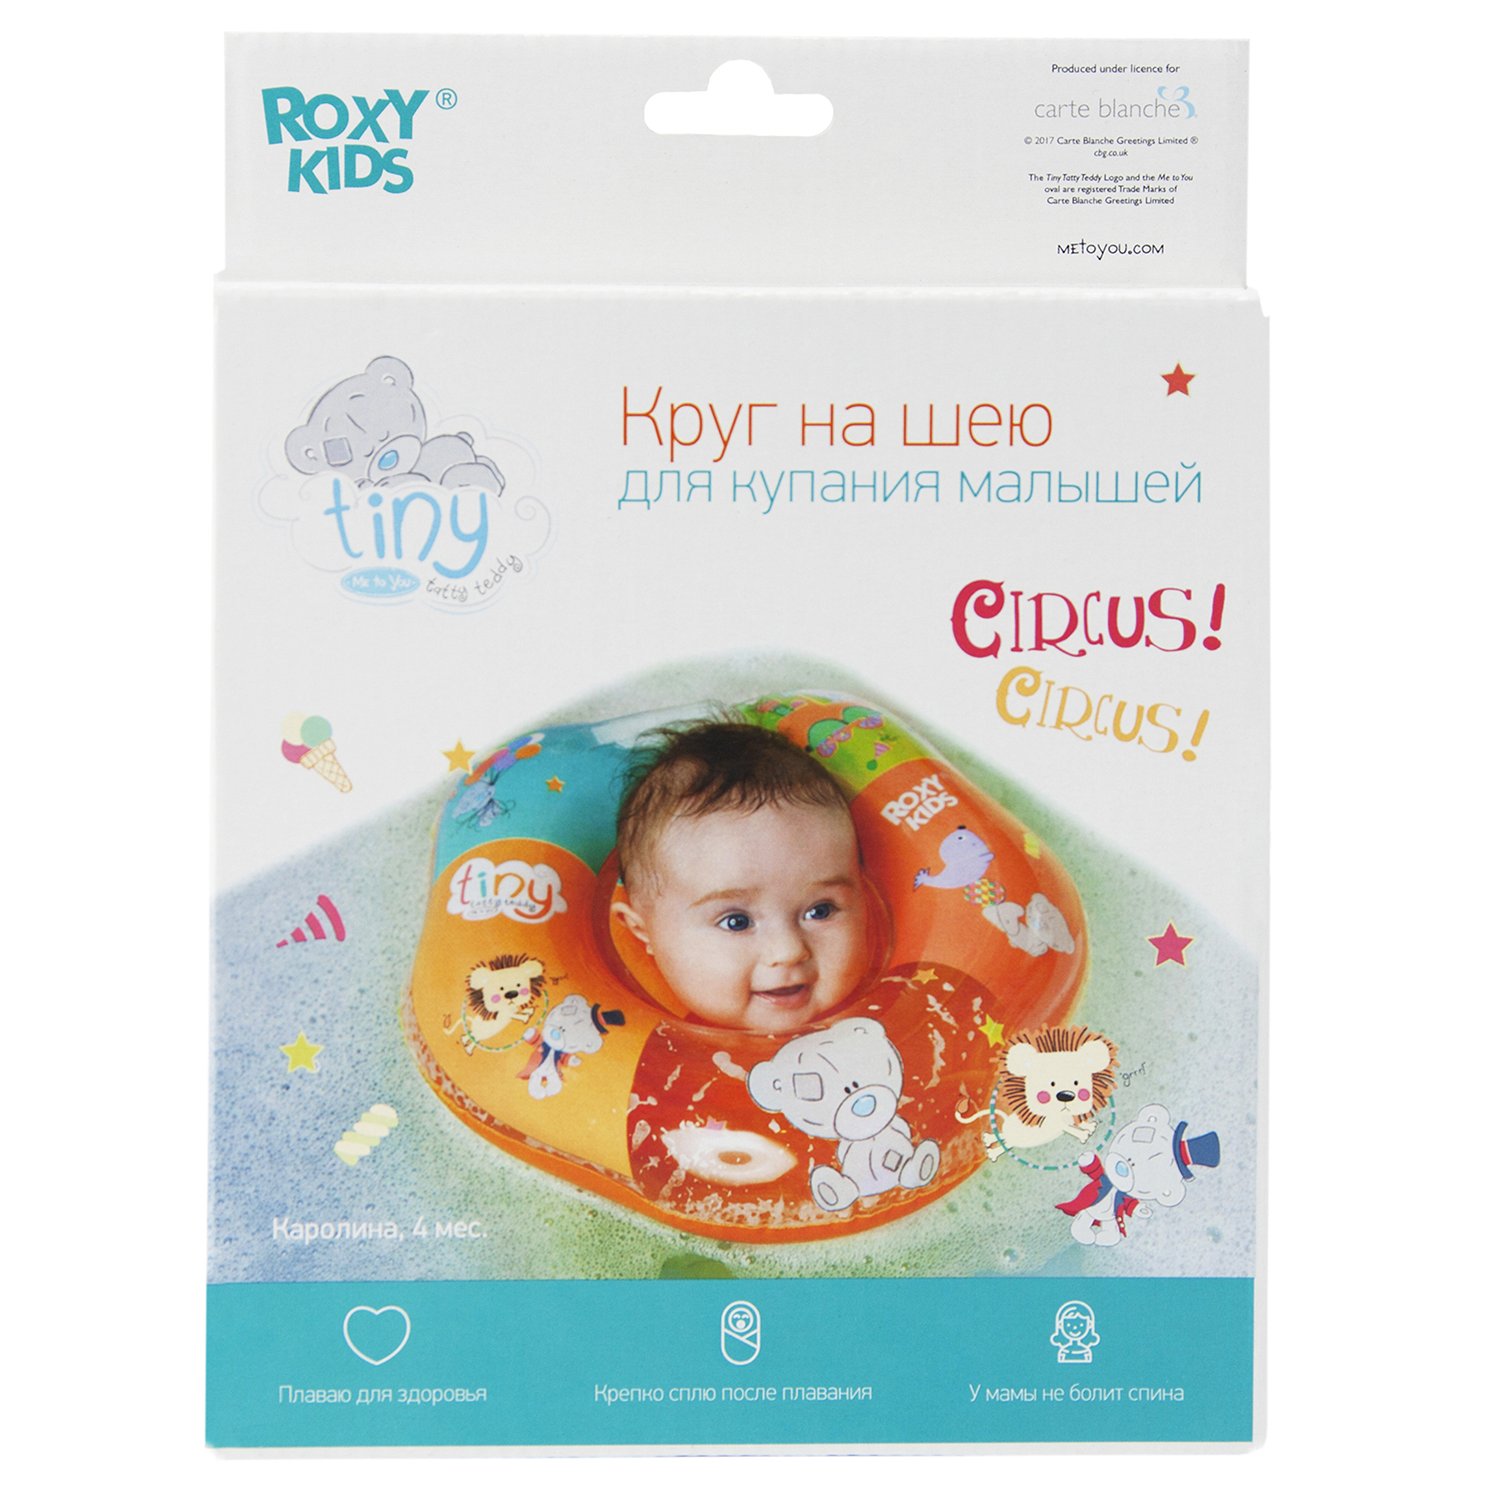 Круг на шею ROXY-KIDS Kids для купания малышей надувной Teddy Circus - фото 3